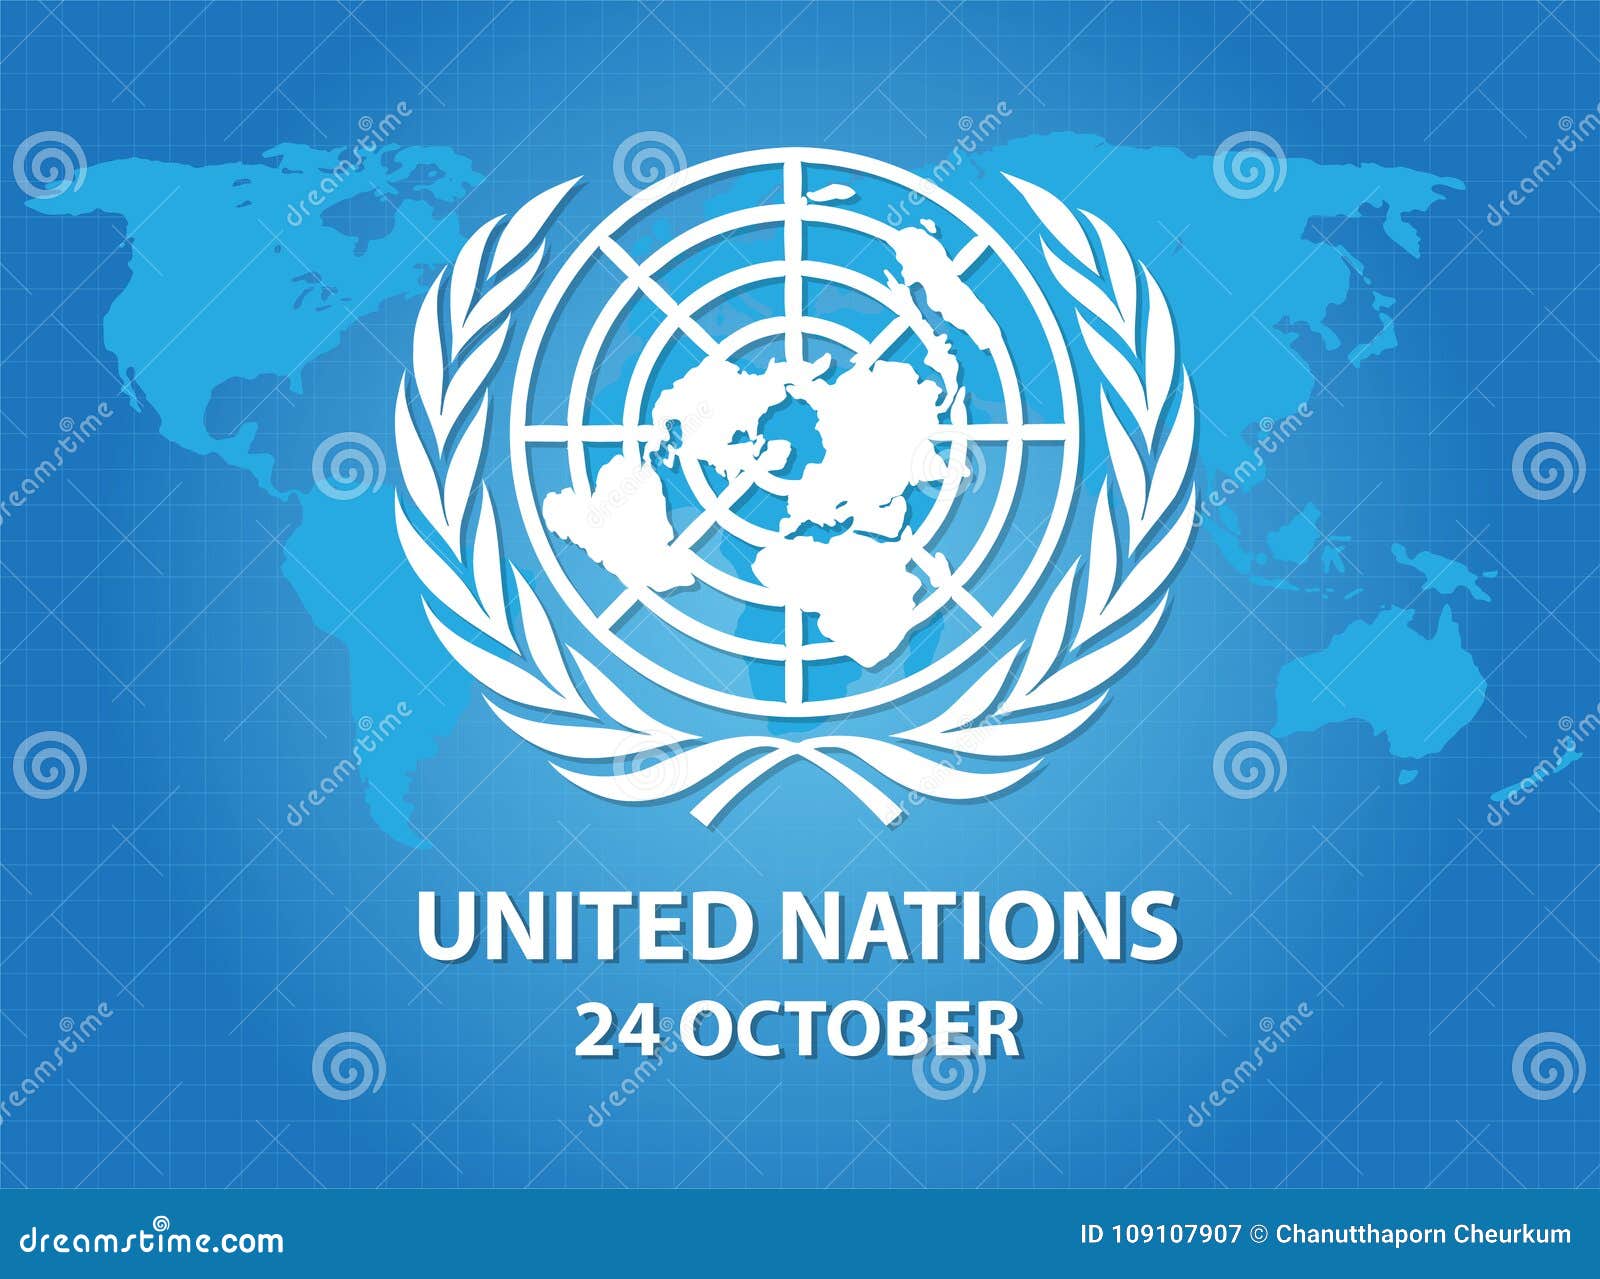 Biểu trưng Liên Hợp Quốc (United Nations logo): Biểu trưng chính thức của Liên Hợp Quốc - một trong những tổ chức lớn nhất và có ảnh hưởng nhất thế giới, đem lại niềm tin và hy vọng trong việc giải quyết các vấn đề toàn cầu. Hình ảnh độc đáo này sẽ mang lại cho bạn những ý tưởng và giá trị tuyệt vời mà Liên Hợp Quốc đem lại cho thế giới.